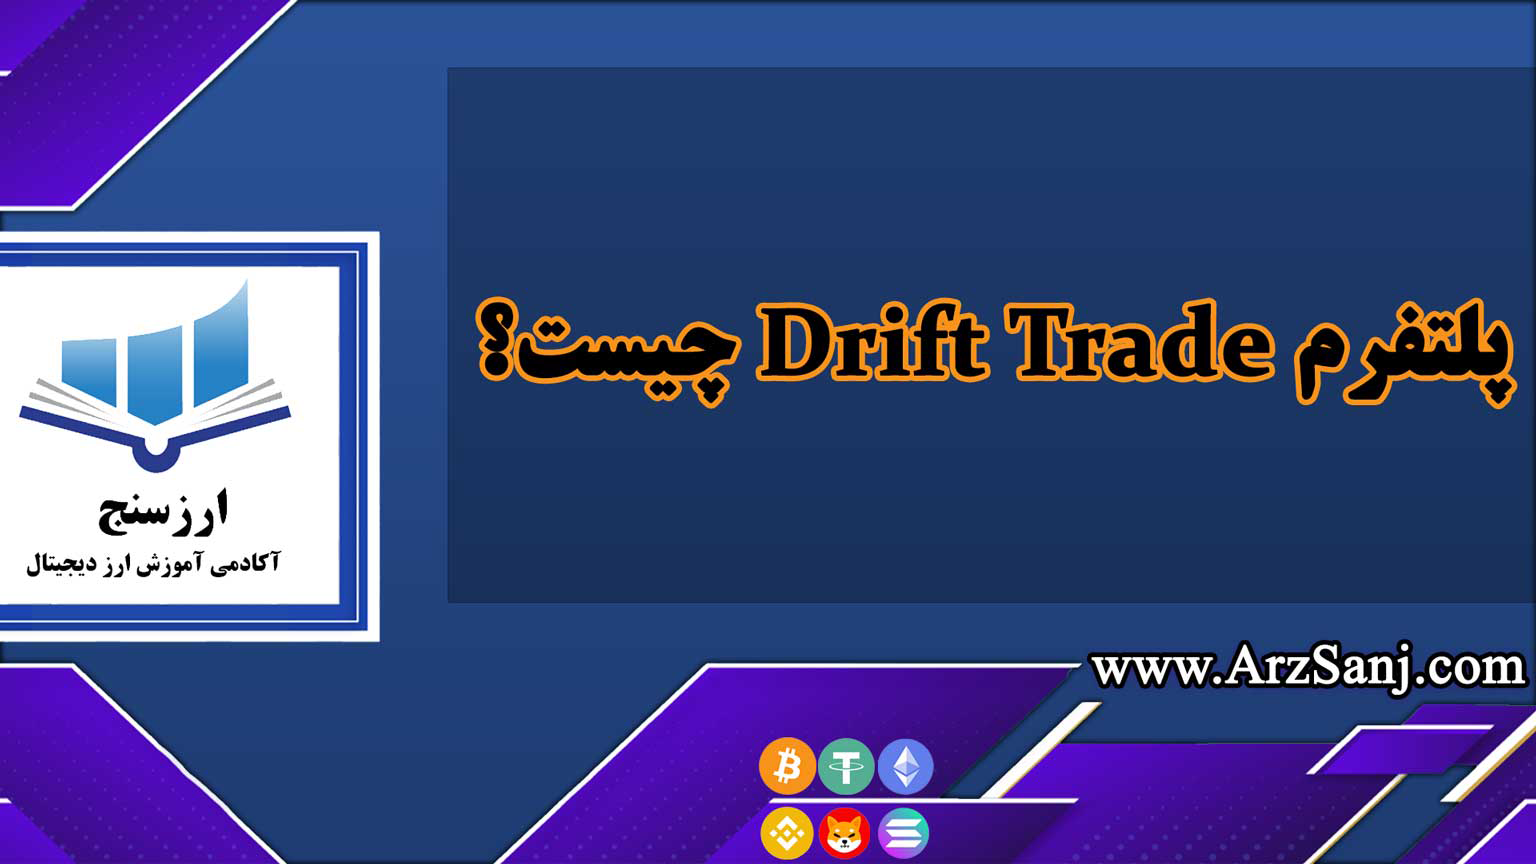 پلتفرم Drift Trade چیست؟